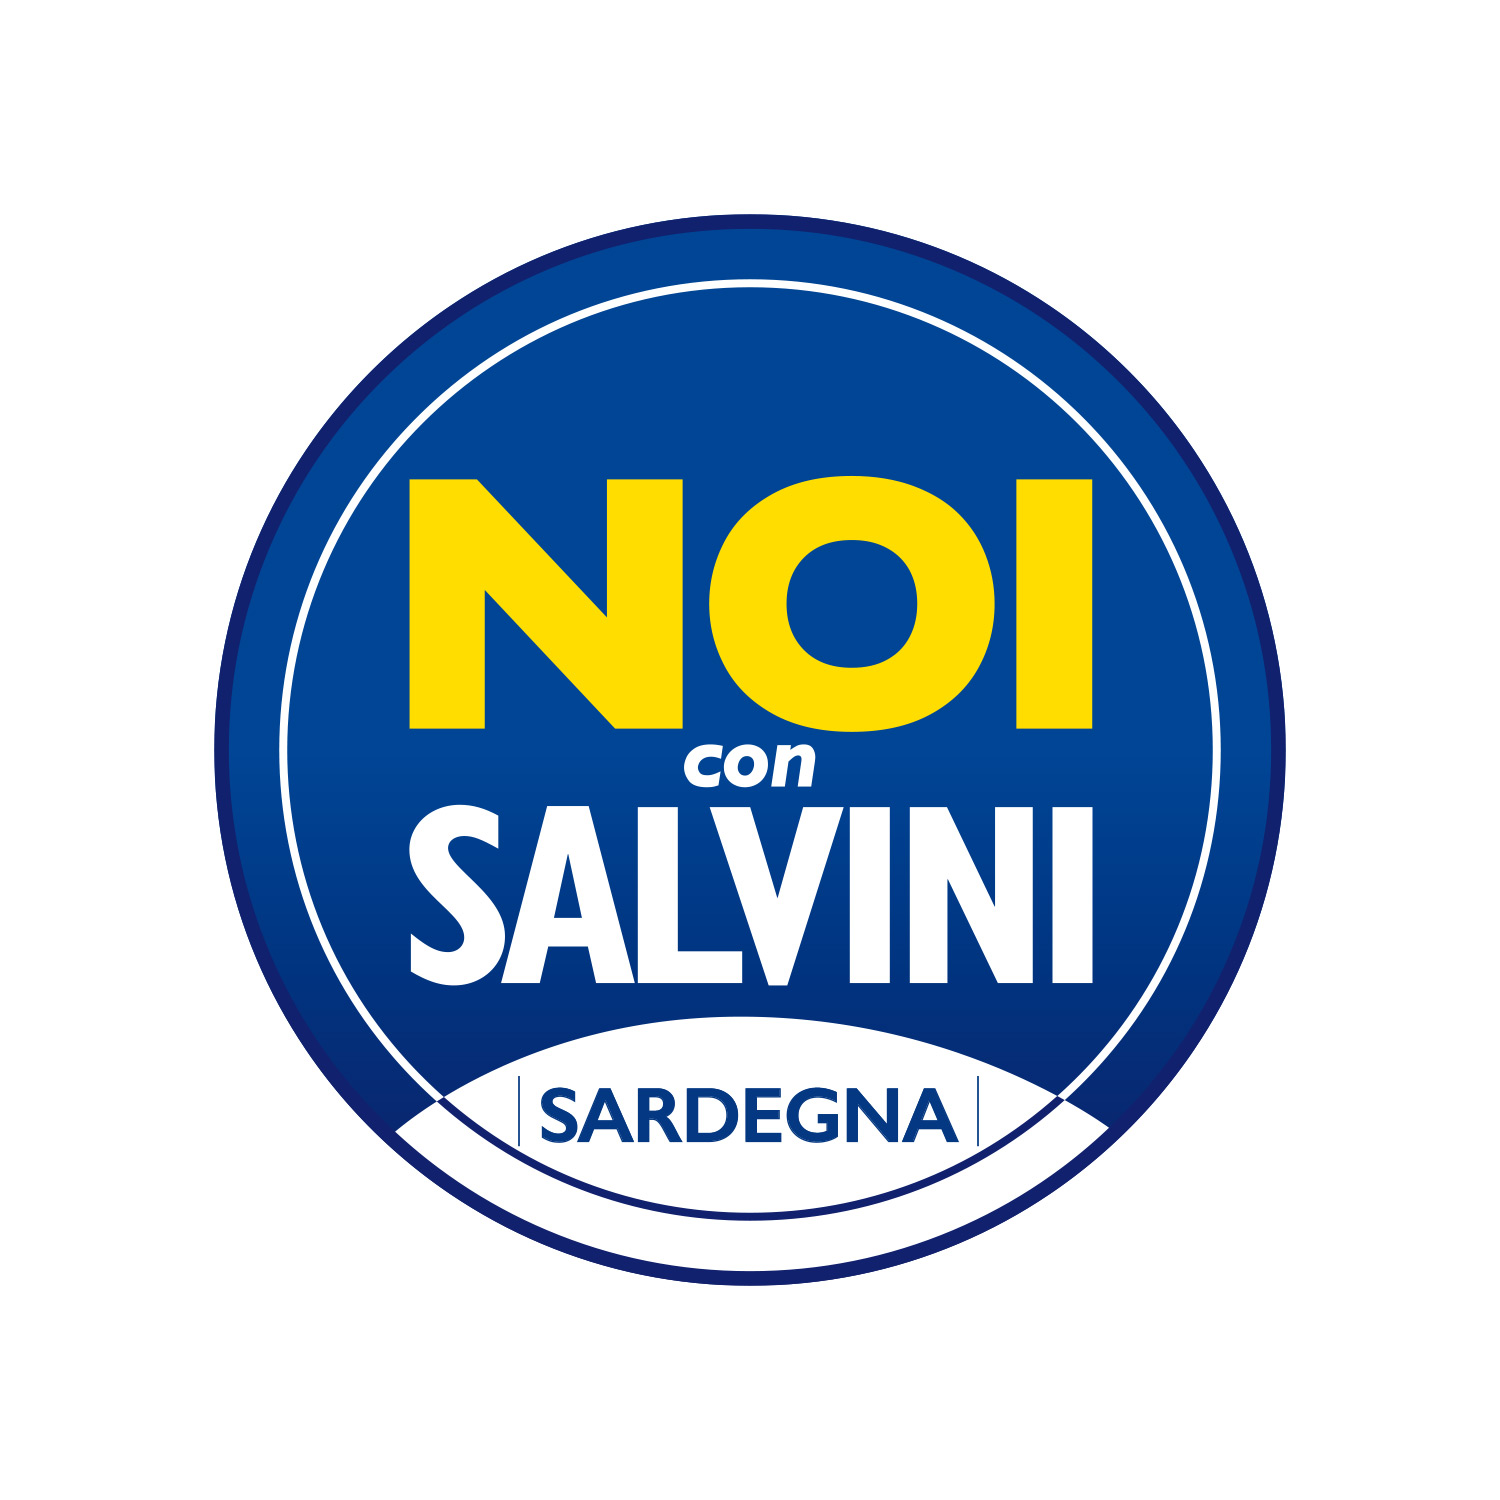 Caruso (Noi con Salvini - Sardegna): “Chiediamo che cessino gli sbarchi di immigrati clandestini in Sardegna”